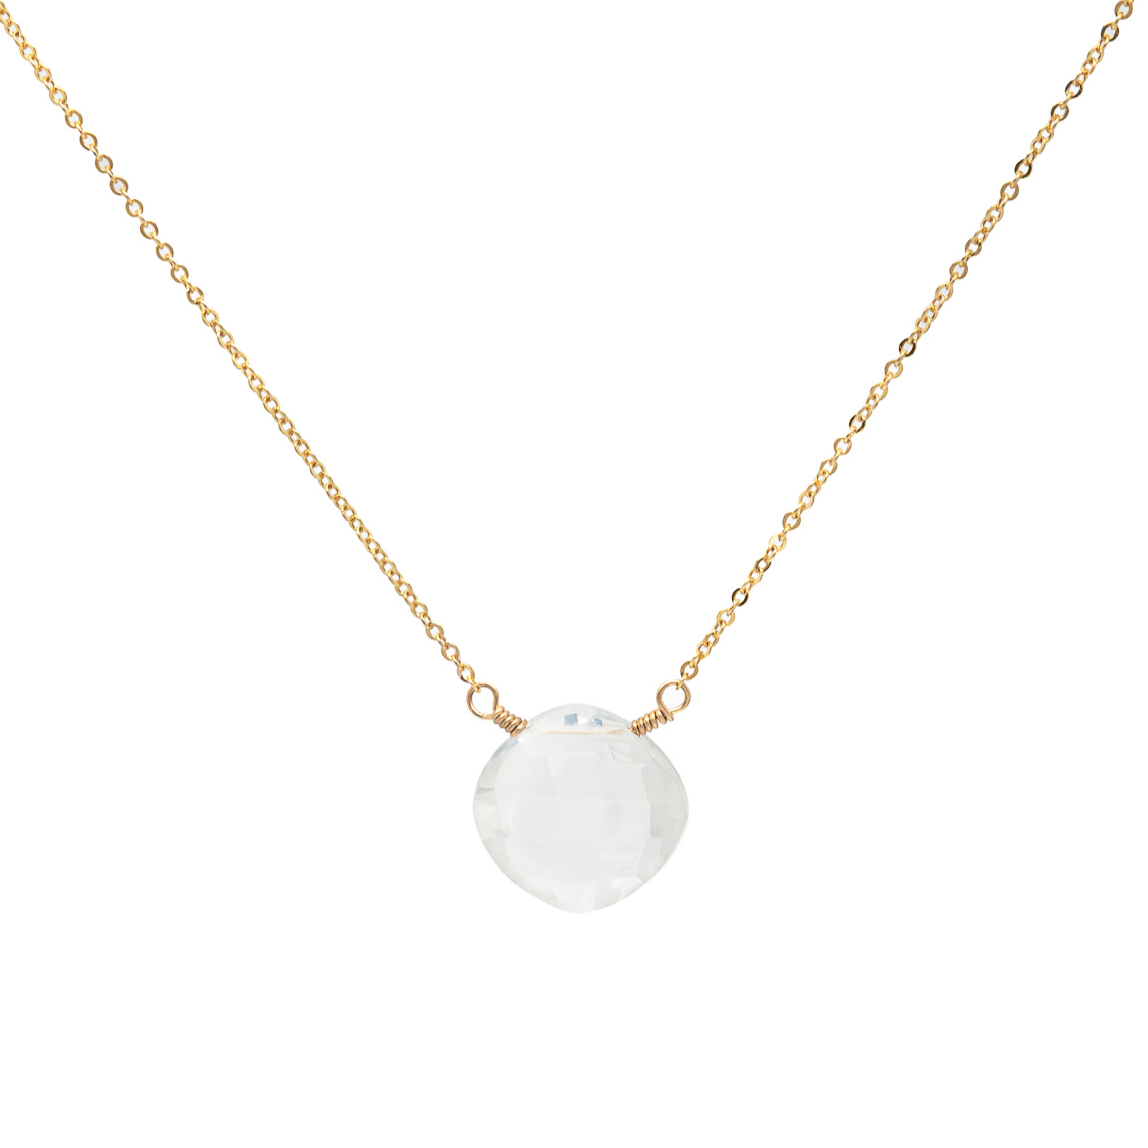 Ice quartz necklace